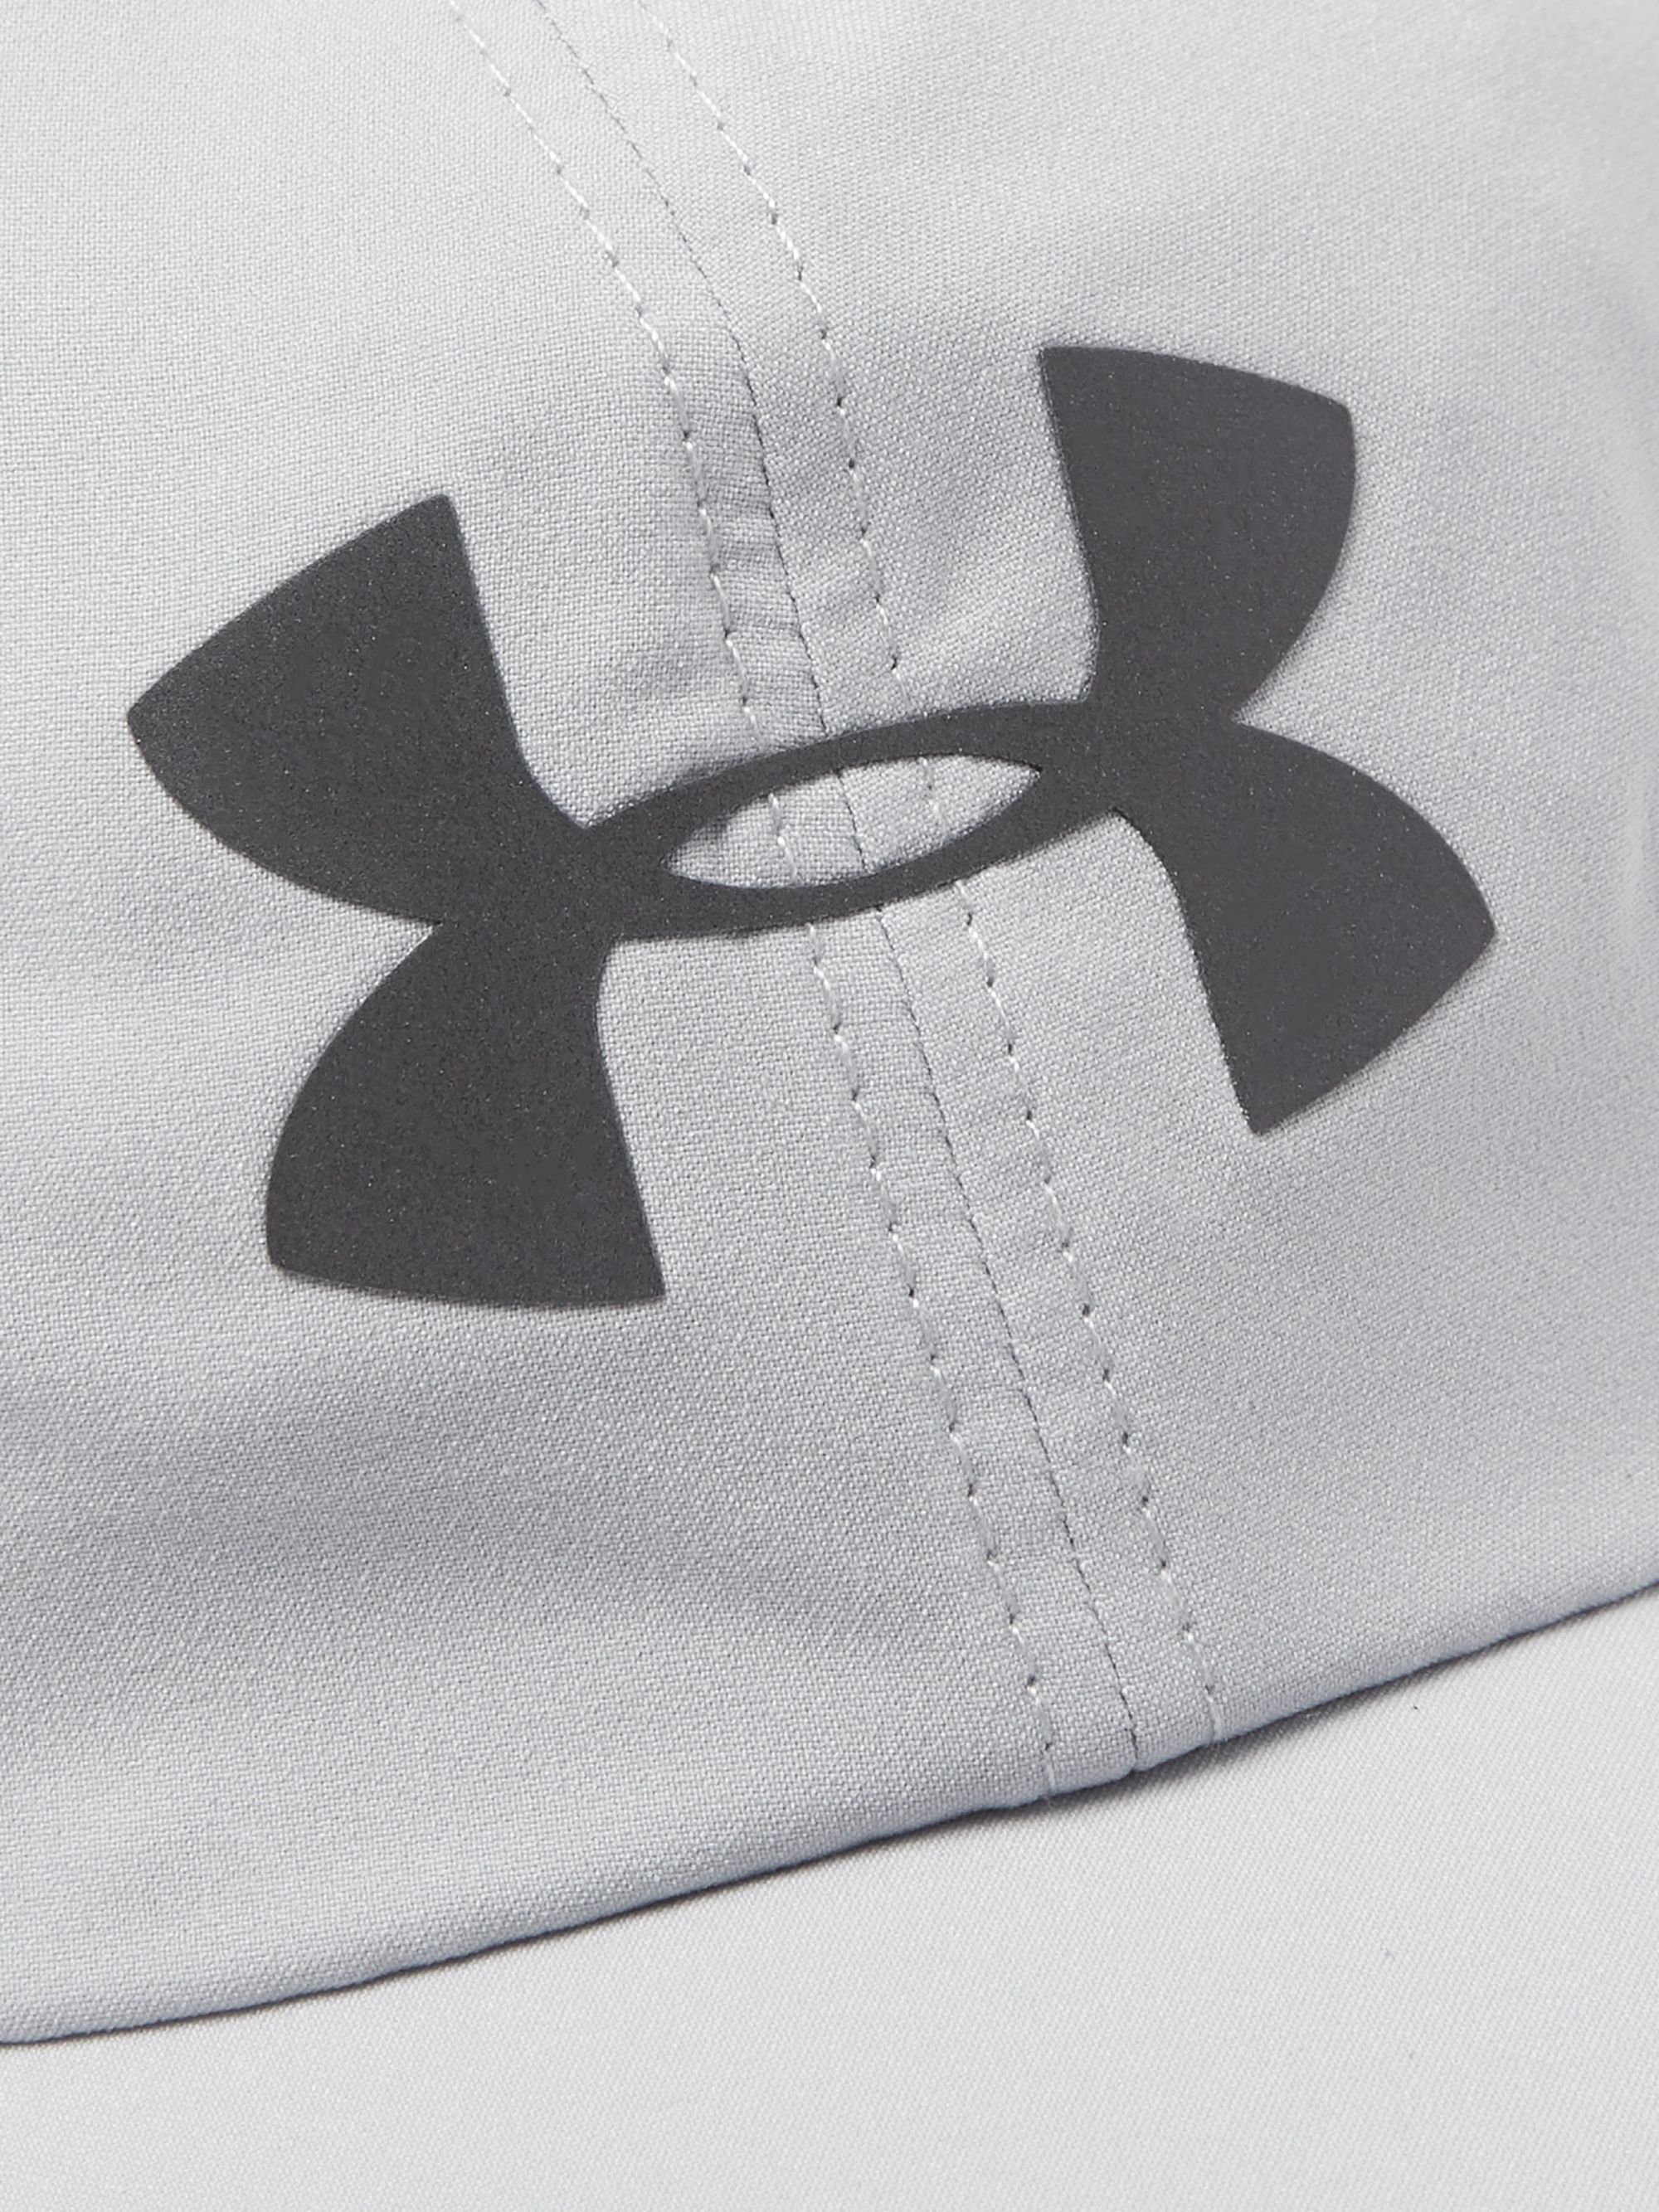 Symbol White Under Armour Logo - almoire